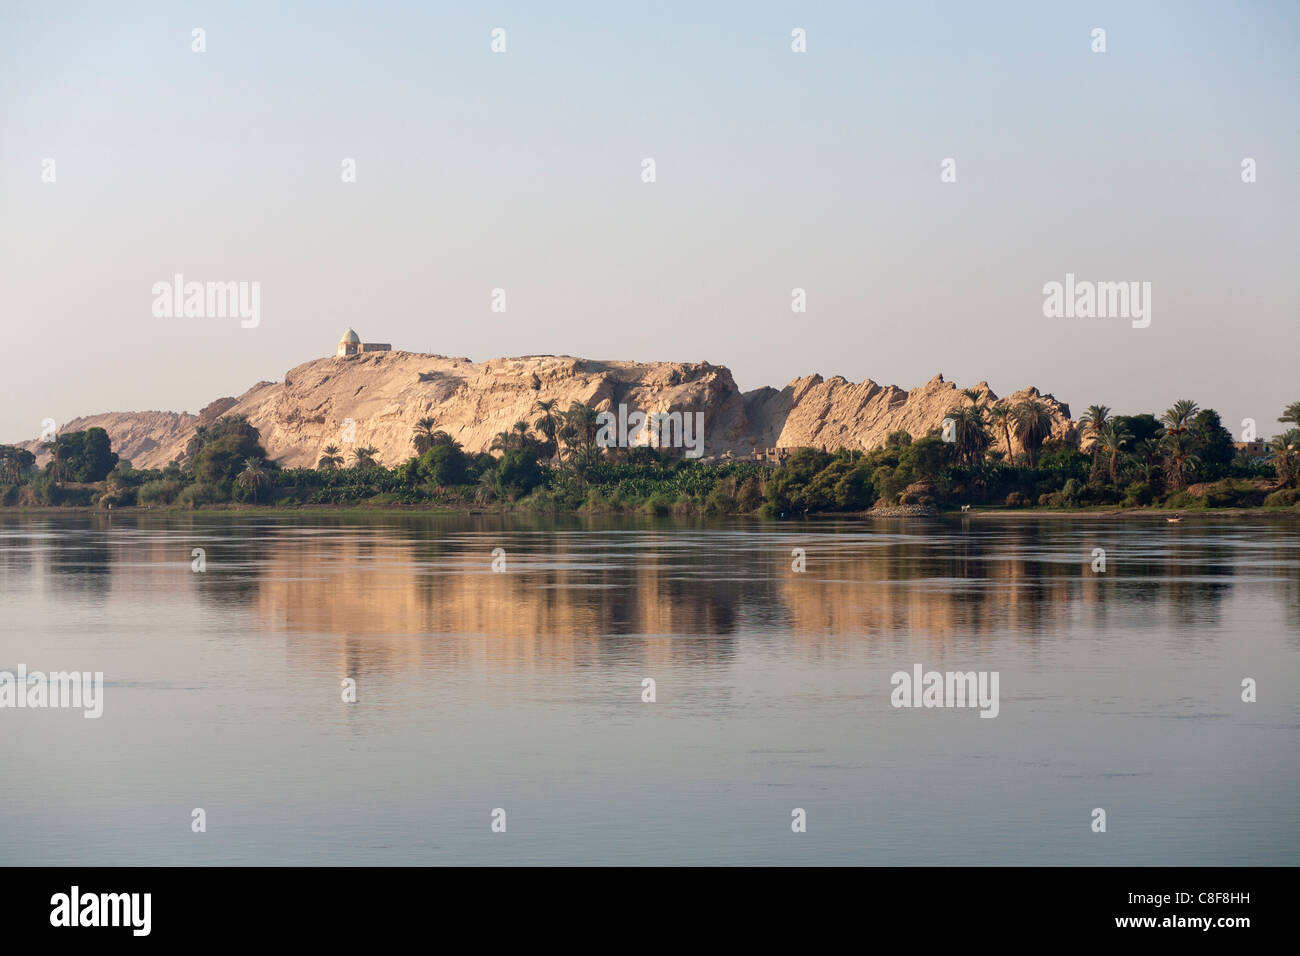 La sezione del fiume Nilo banca con affioramento roccioso con il santuario in cima e alberata base tutti riflette i morti in acqua calma Foto Stock